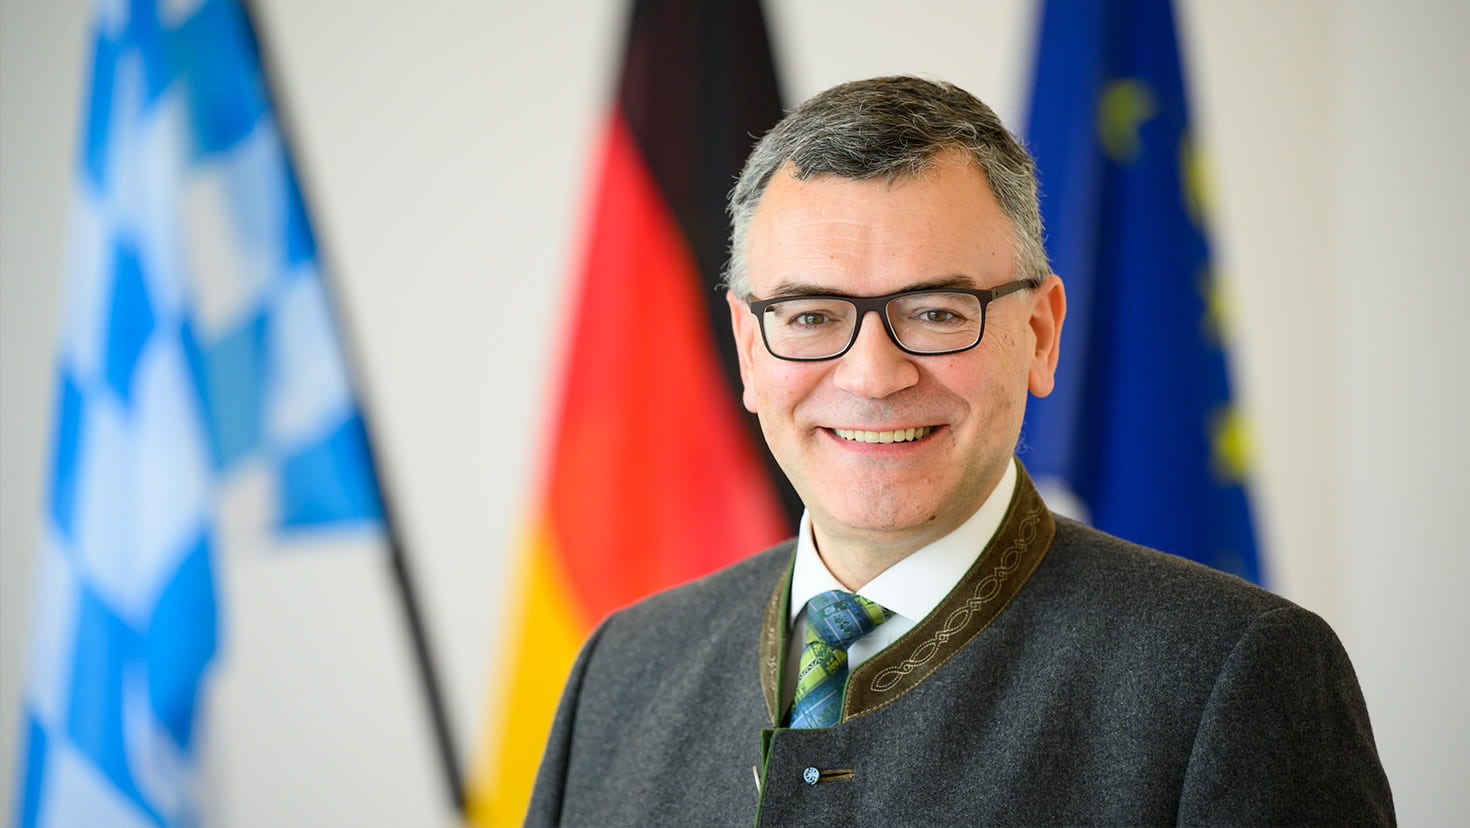 Staatsminister Dr. Florian Herrmann